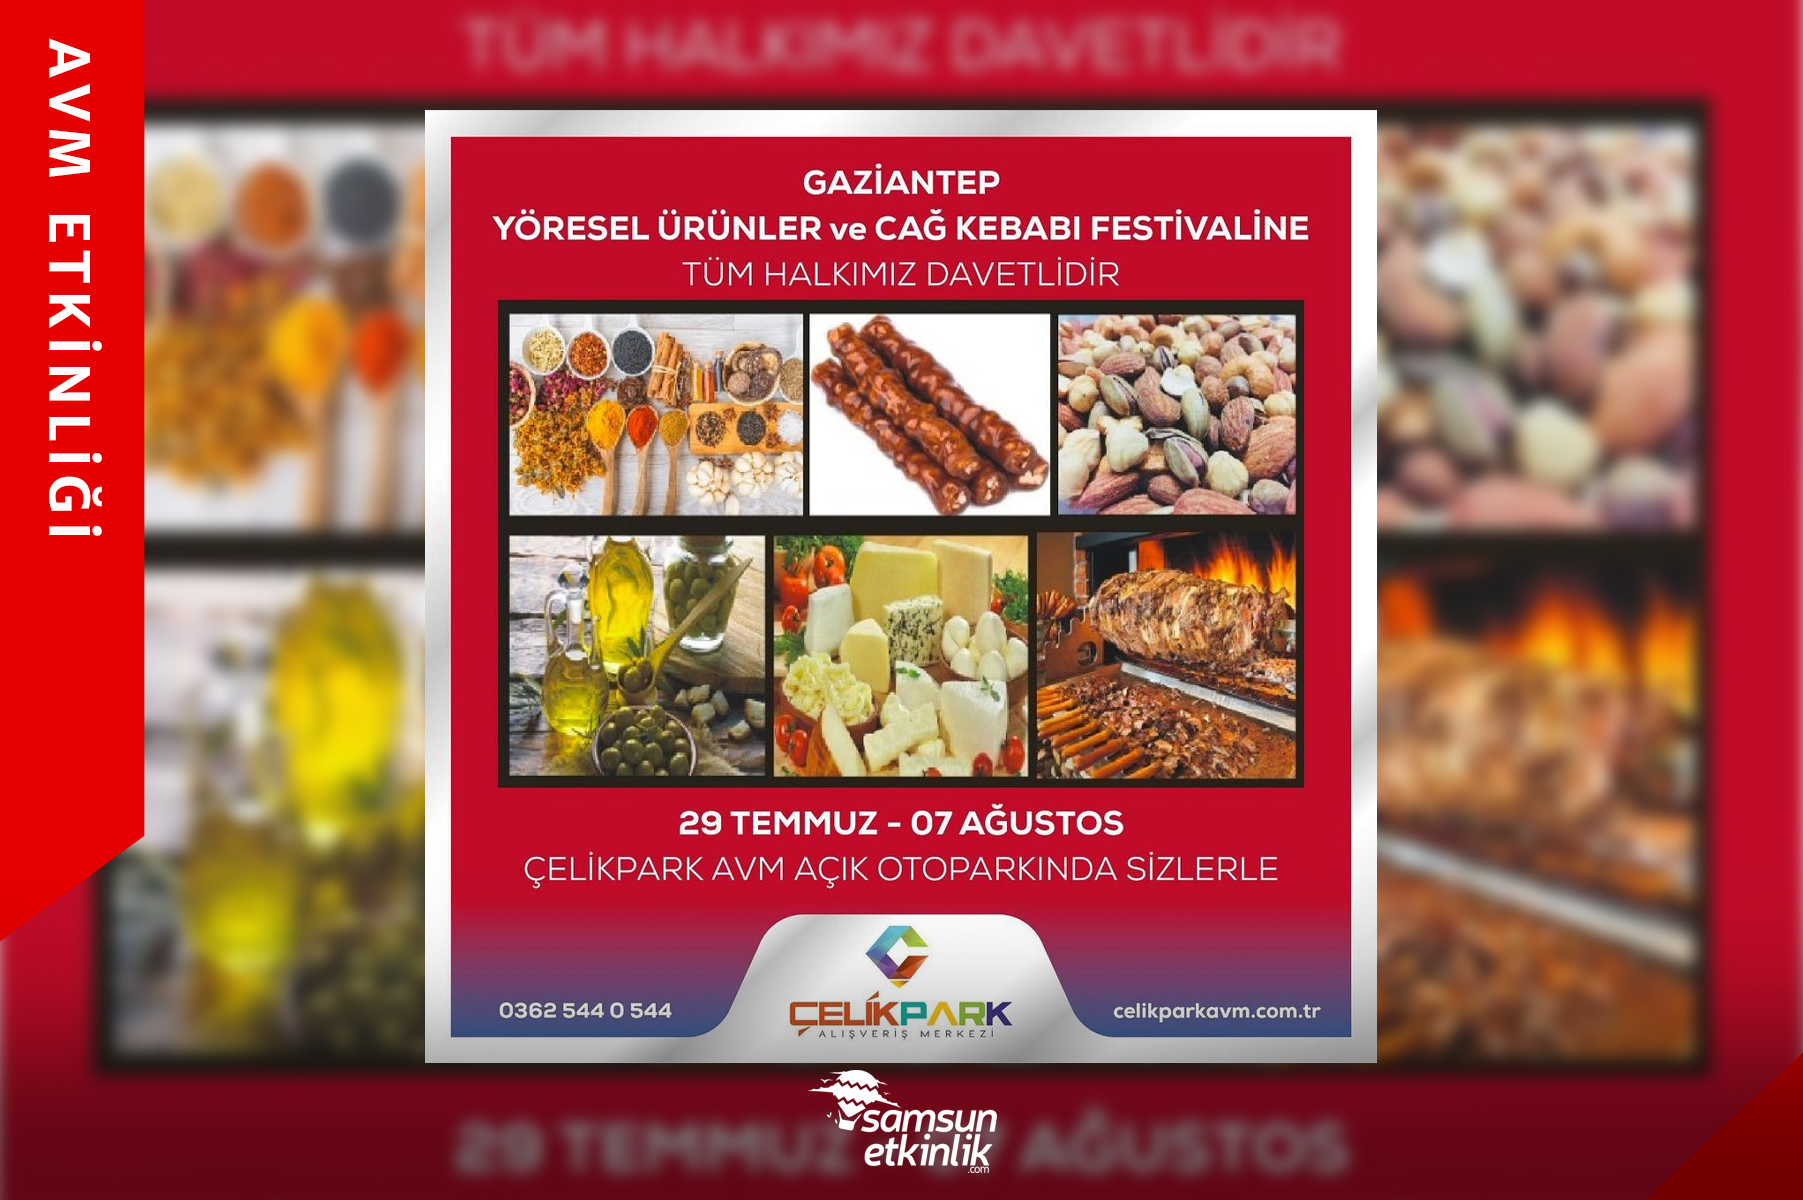 Gaziantep Yöresel Ürünler ve Cağ Kebabı Festivali